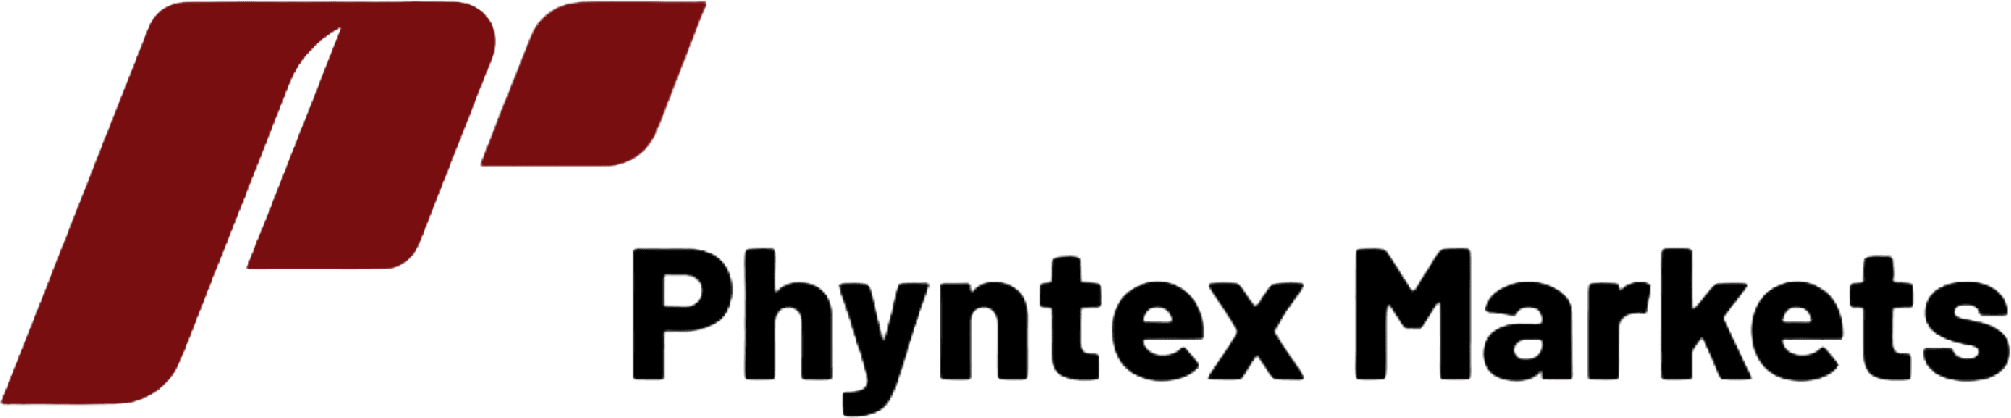 Phyntex Markets